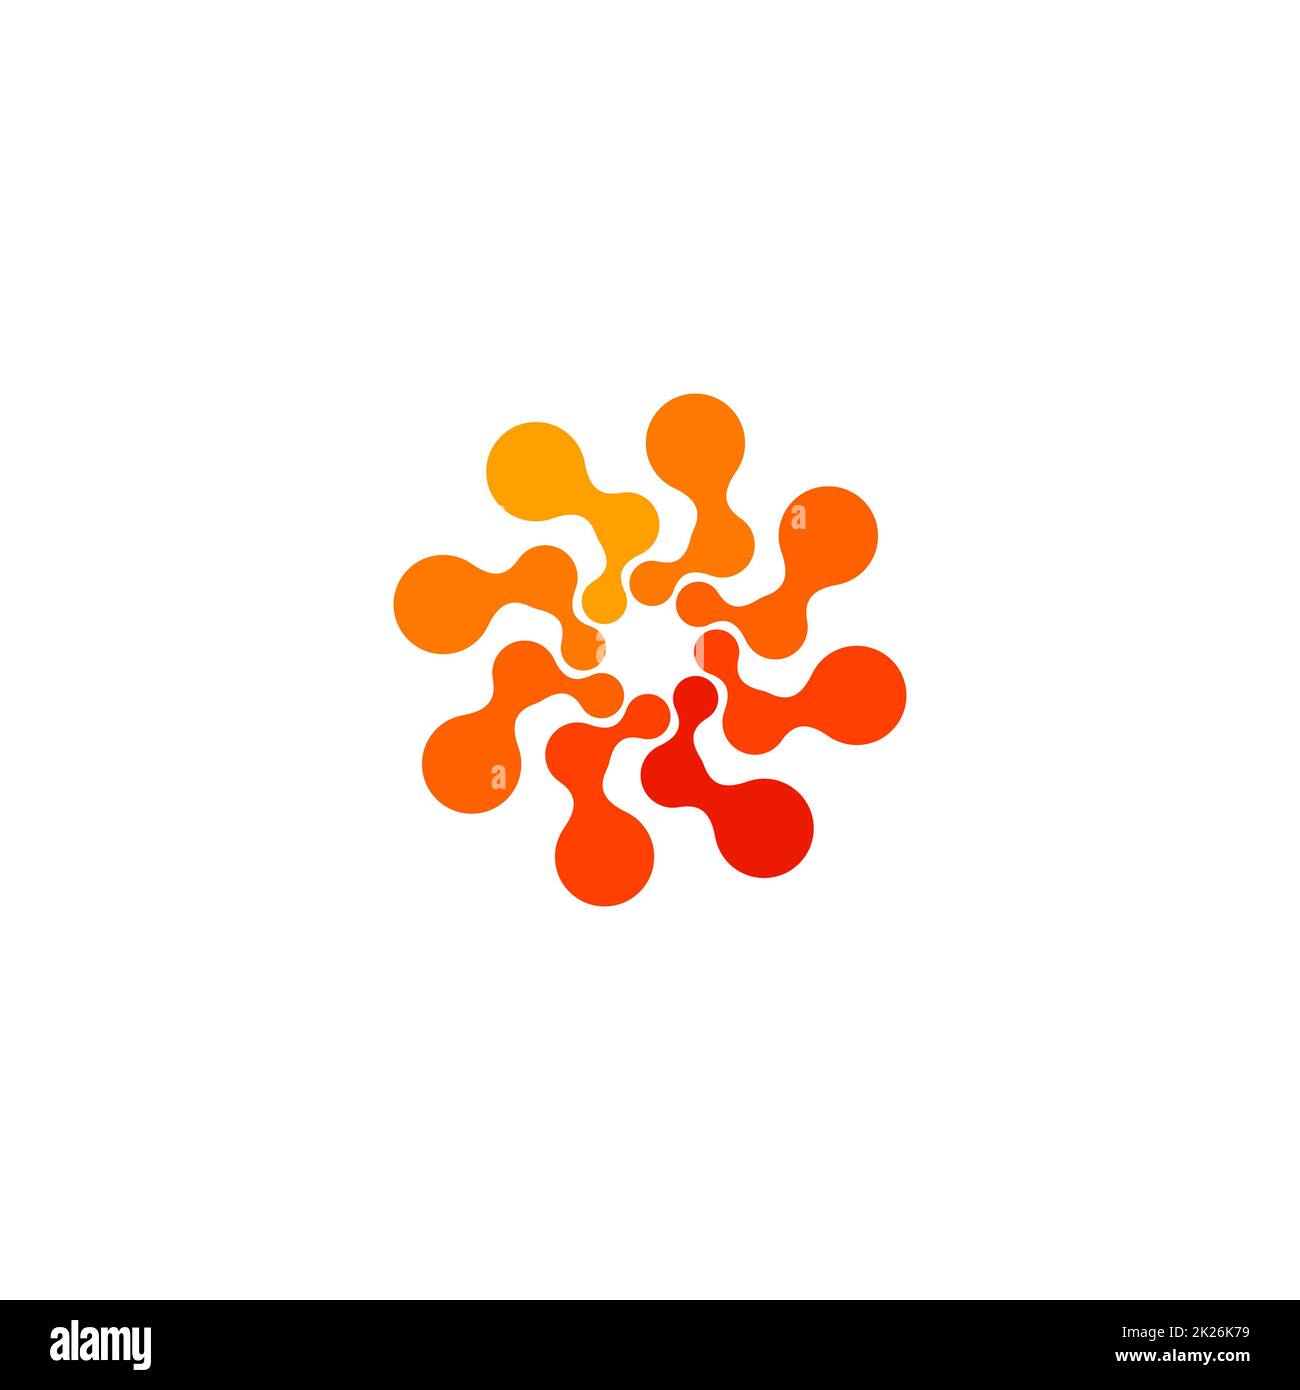 Isoliertes, abstraktes, rundes, orangefarbenes Logo, gepunktetes, stilisiertes Sonnenlogo auf weißem Hintergrund, wirbelförmige Vektordarstellung Stockfoto